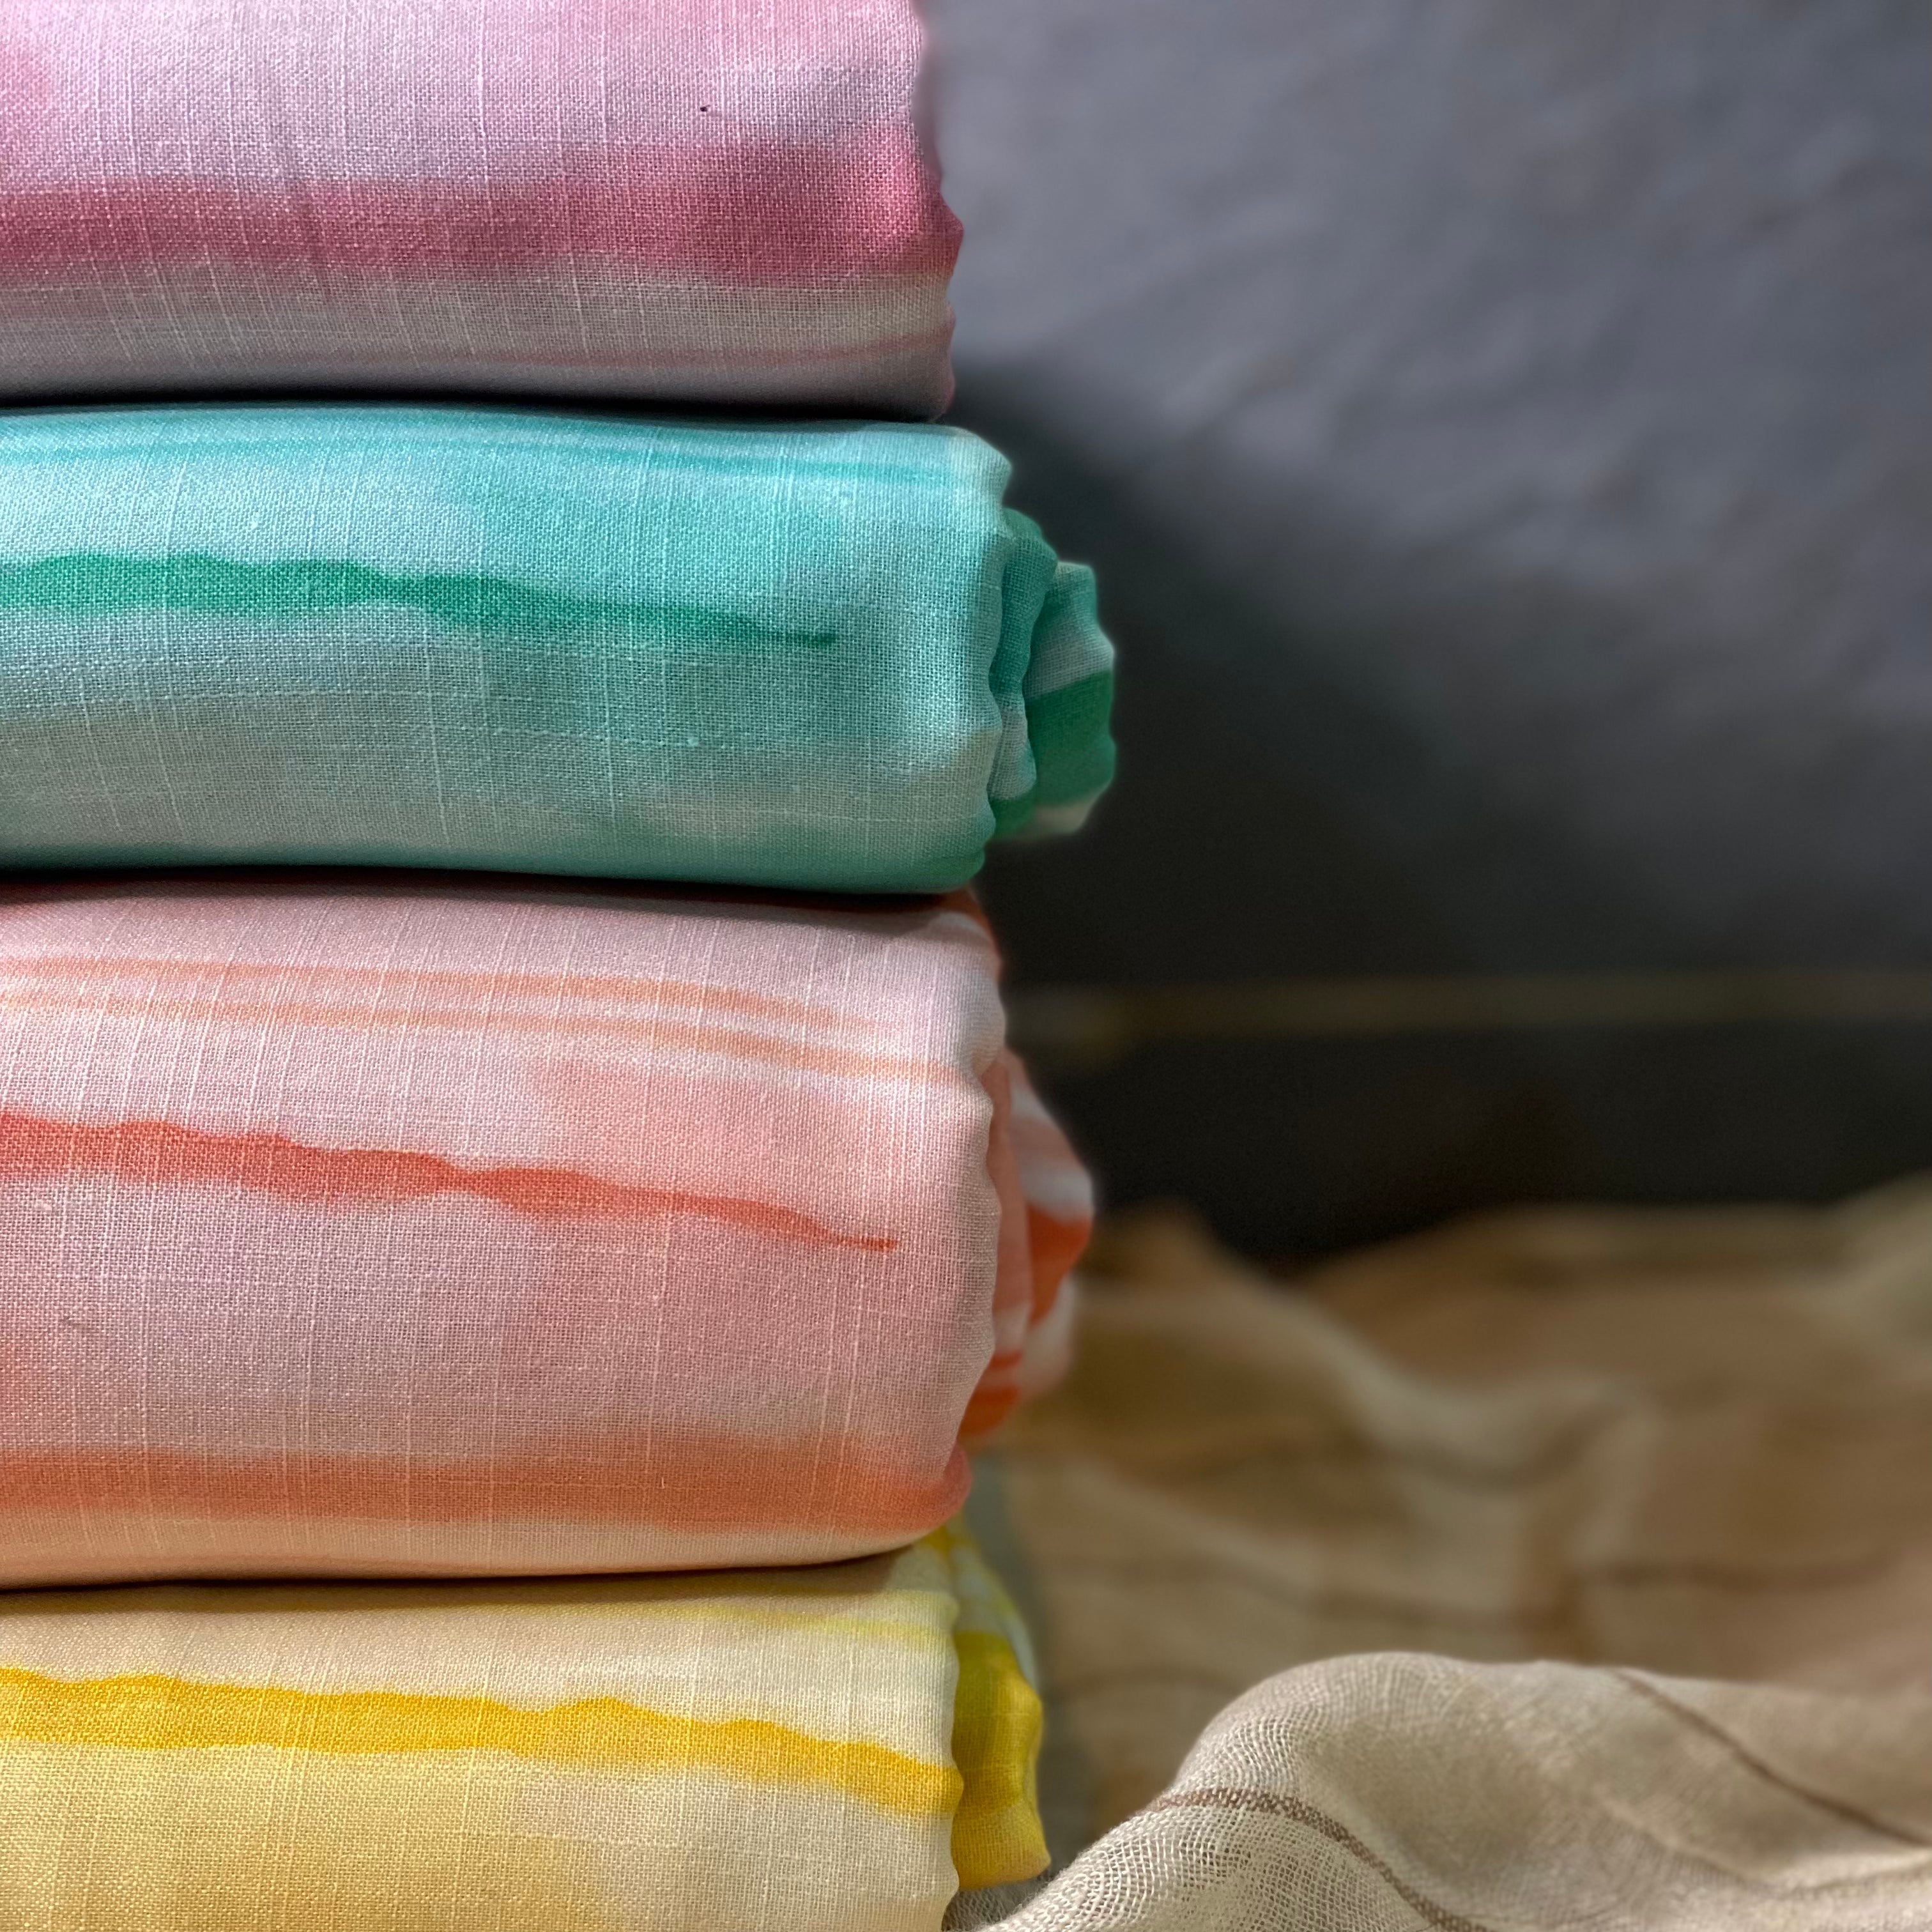 Best seller : Tie & Dye striped pattern on Cotton-Linen fabric per meter